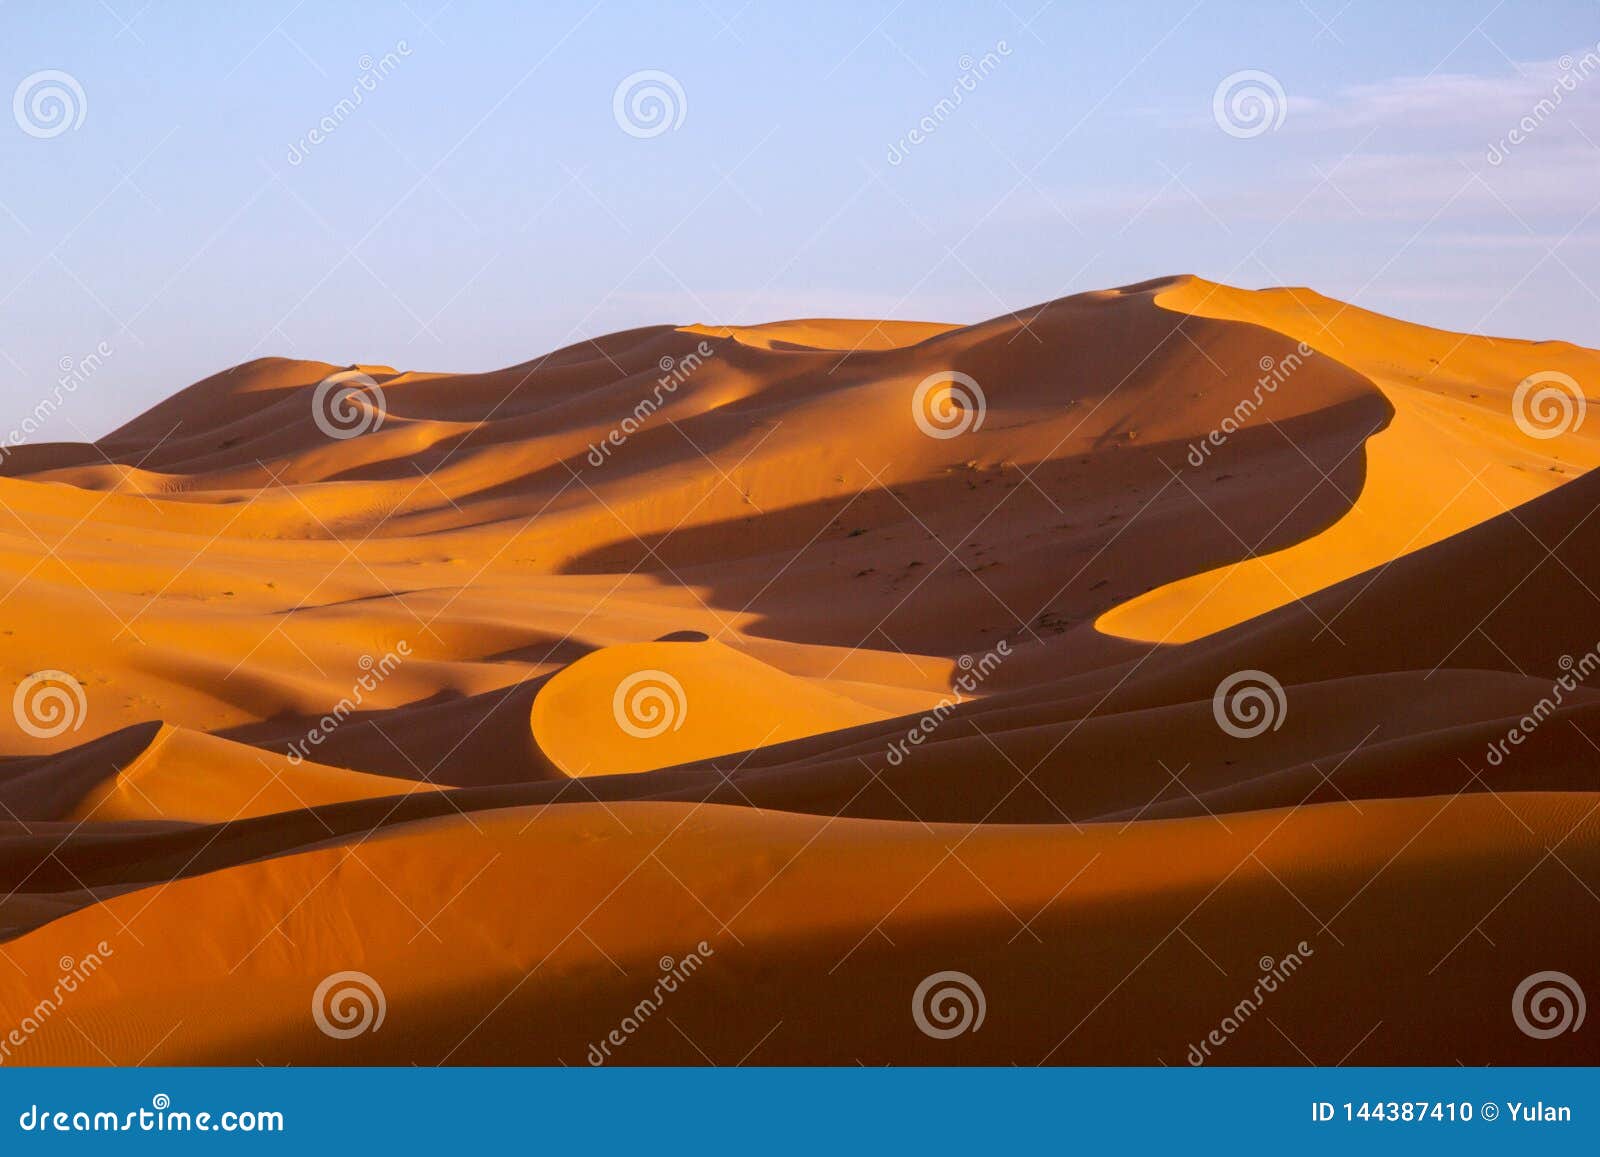 sand dunes from sahara desert